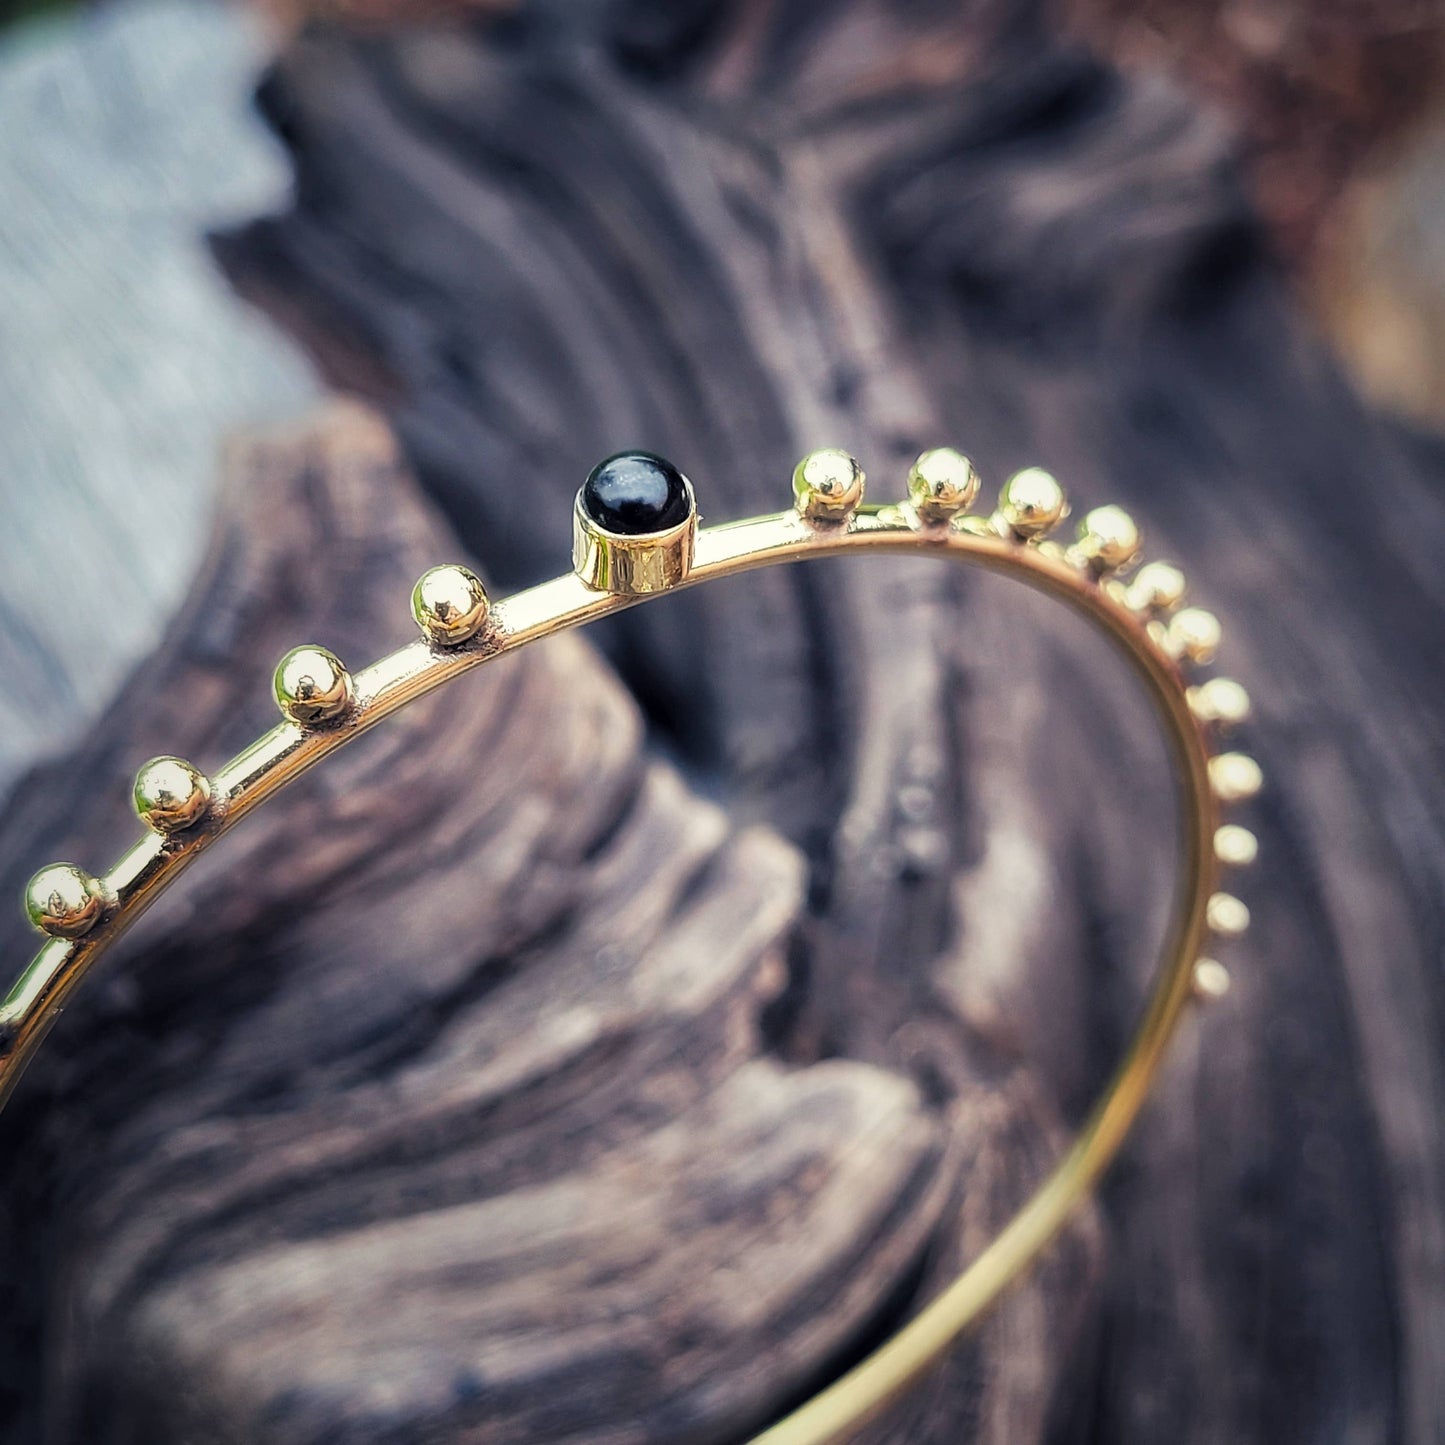 Brass bangle bracelet: Onyx